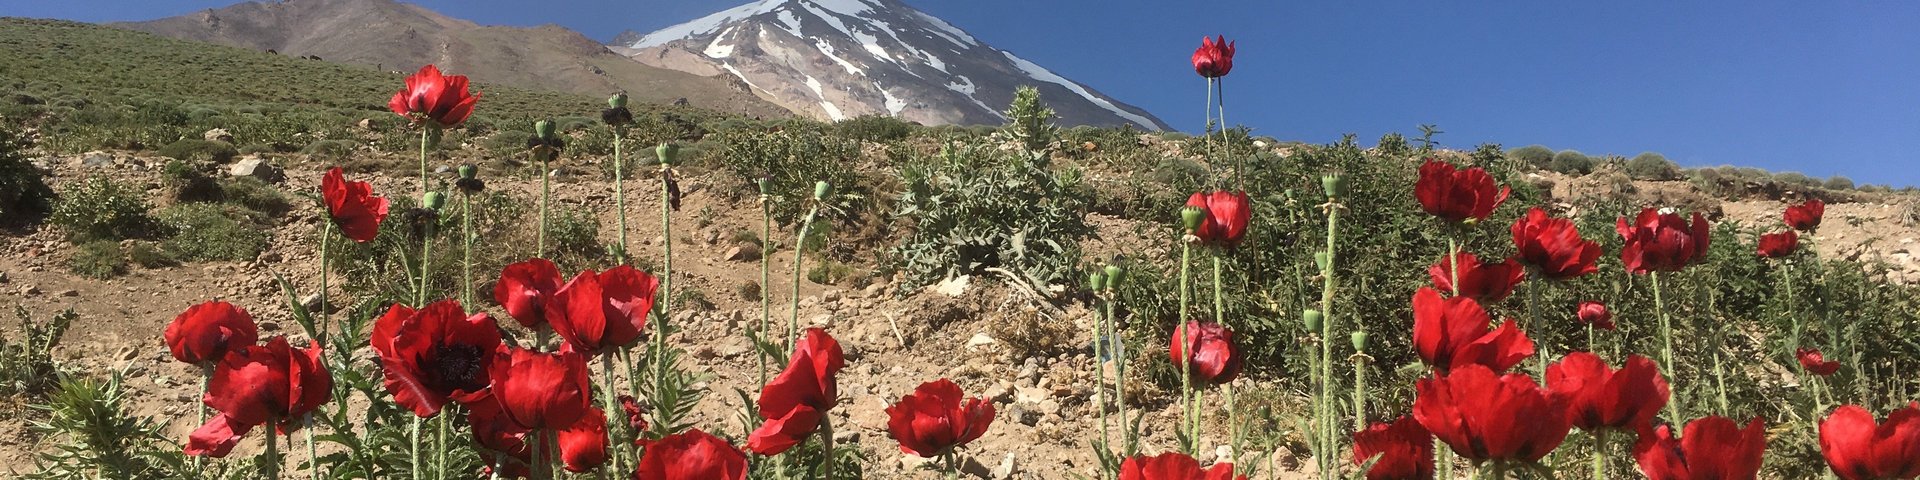 Blumen am Mount Damavand